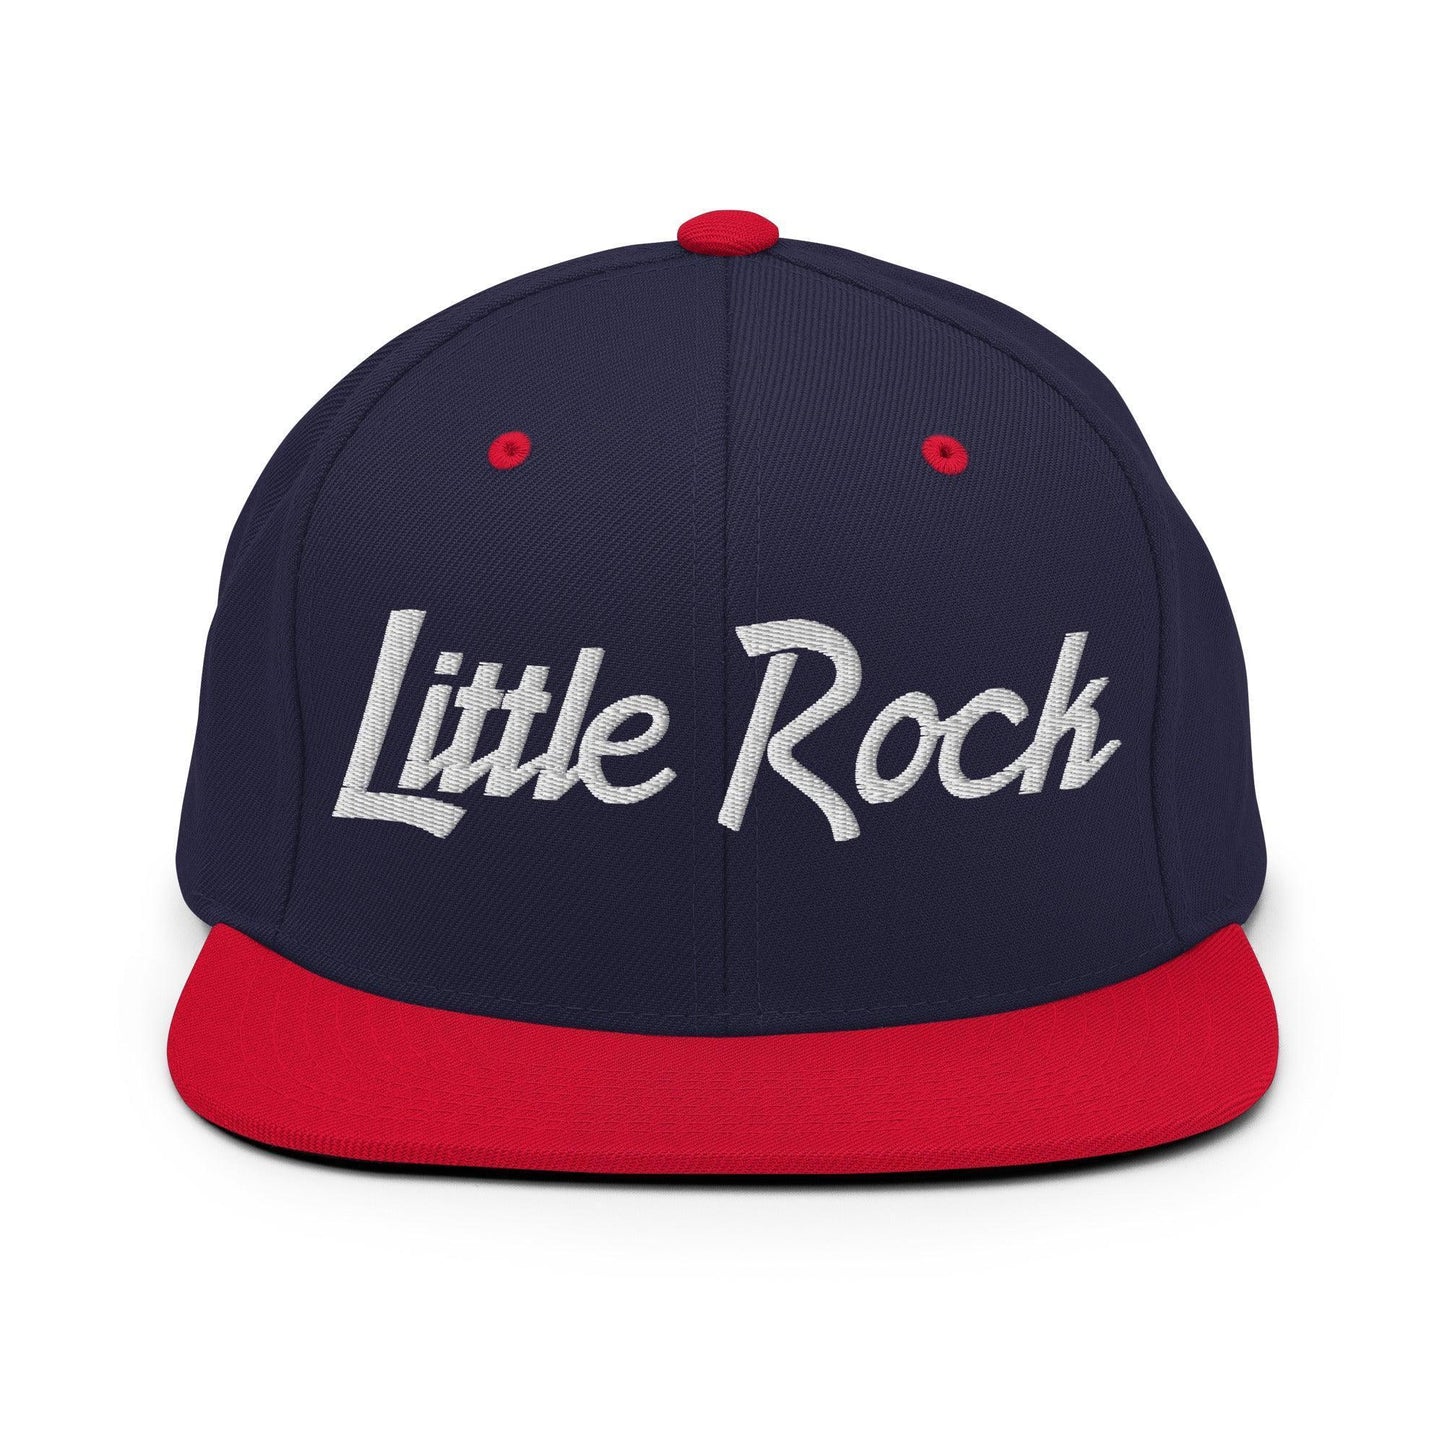 Little Rock Script Snapback Hat Navy Red